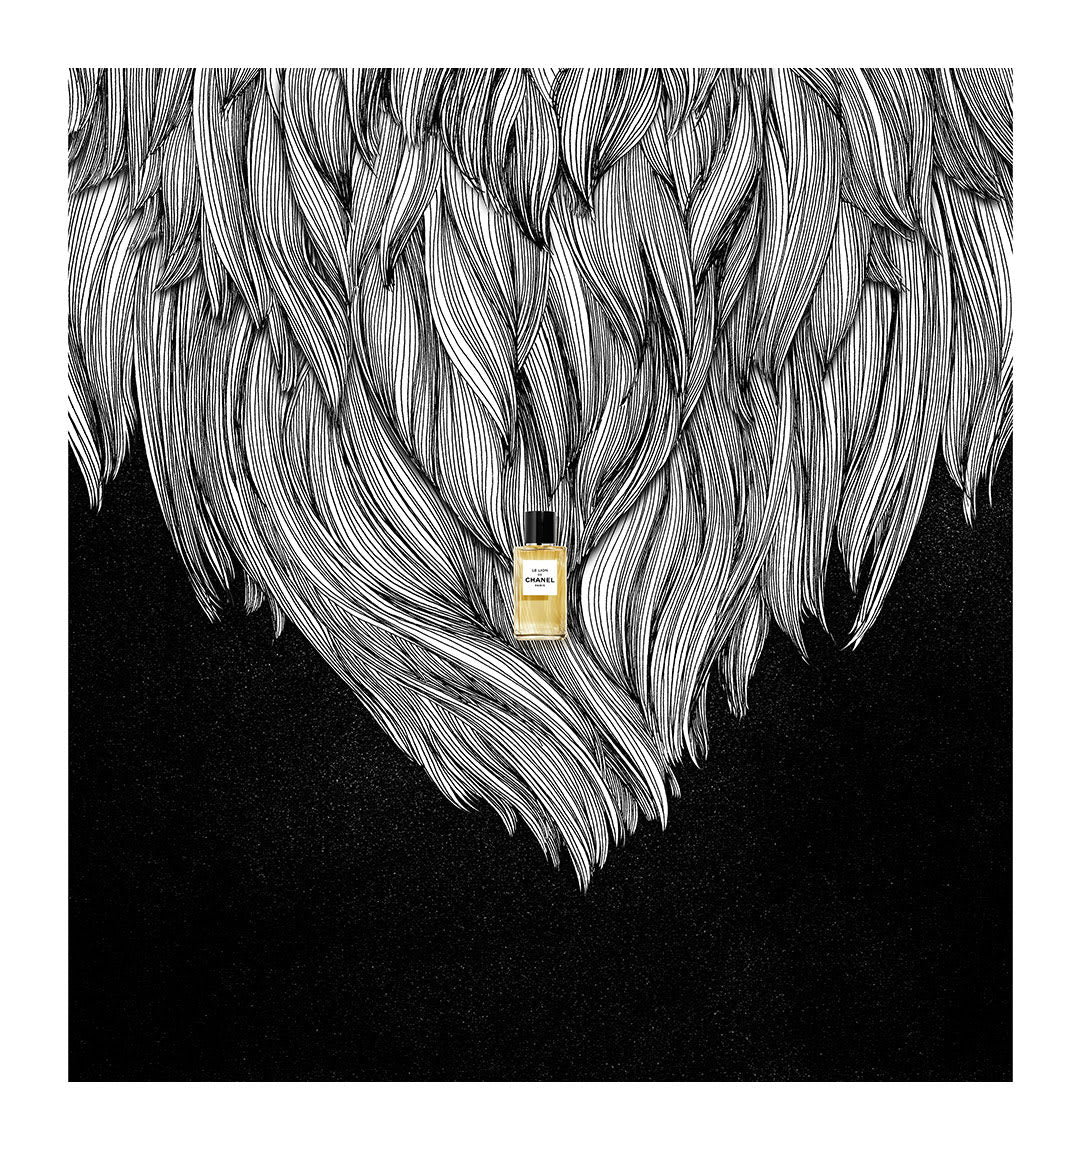 Nước Hoa CHANEL Le Lion De Chanel Les Exclusifs De Chanel – Eau de Parfum